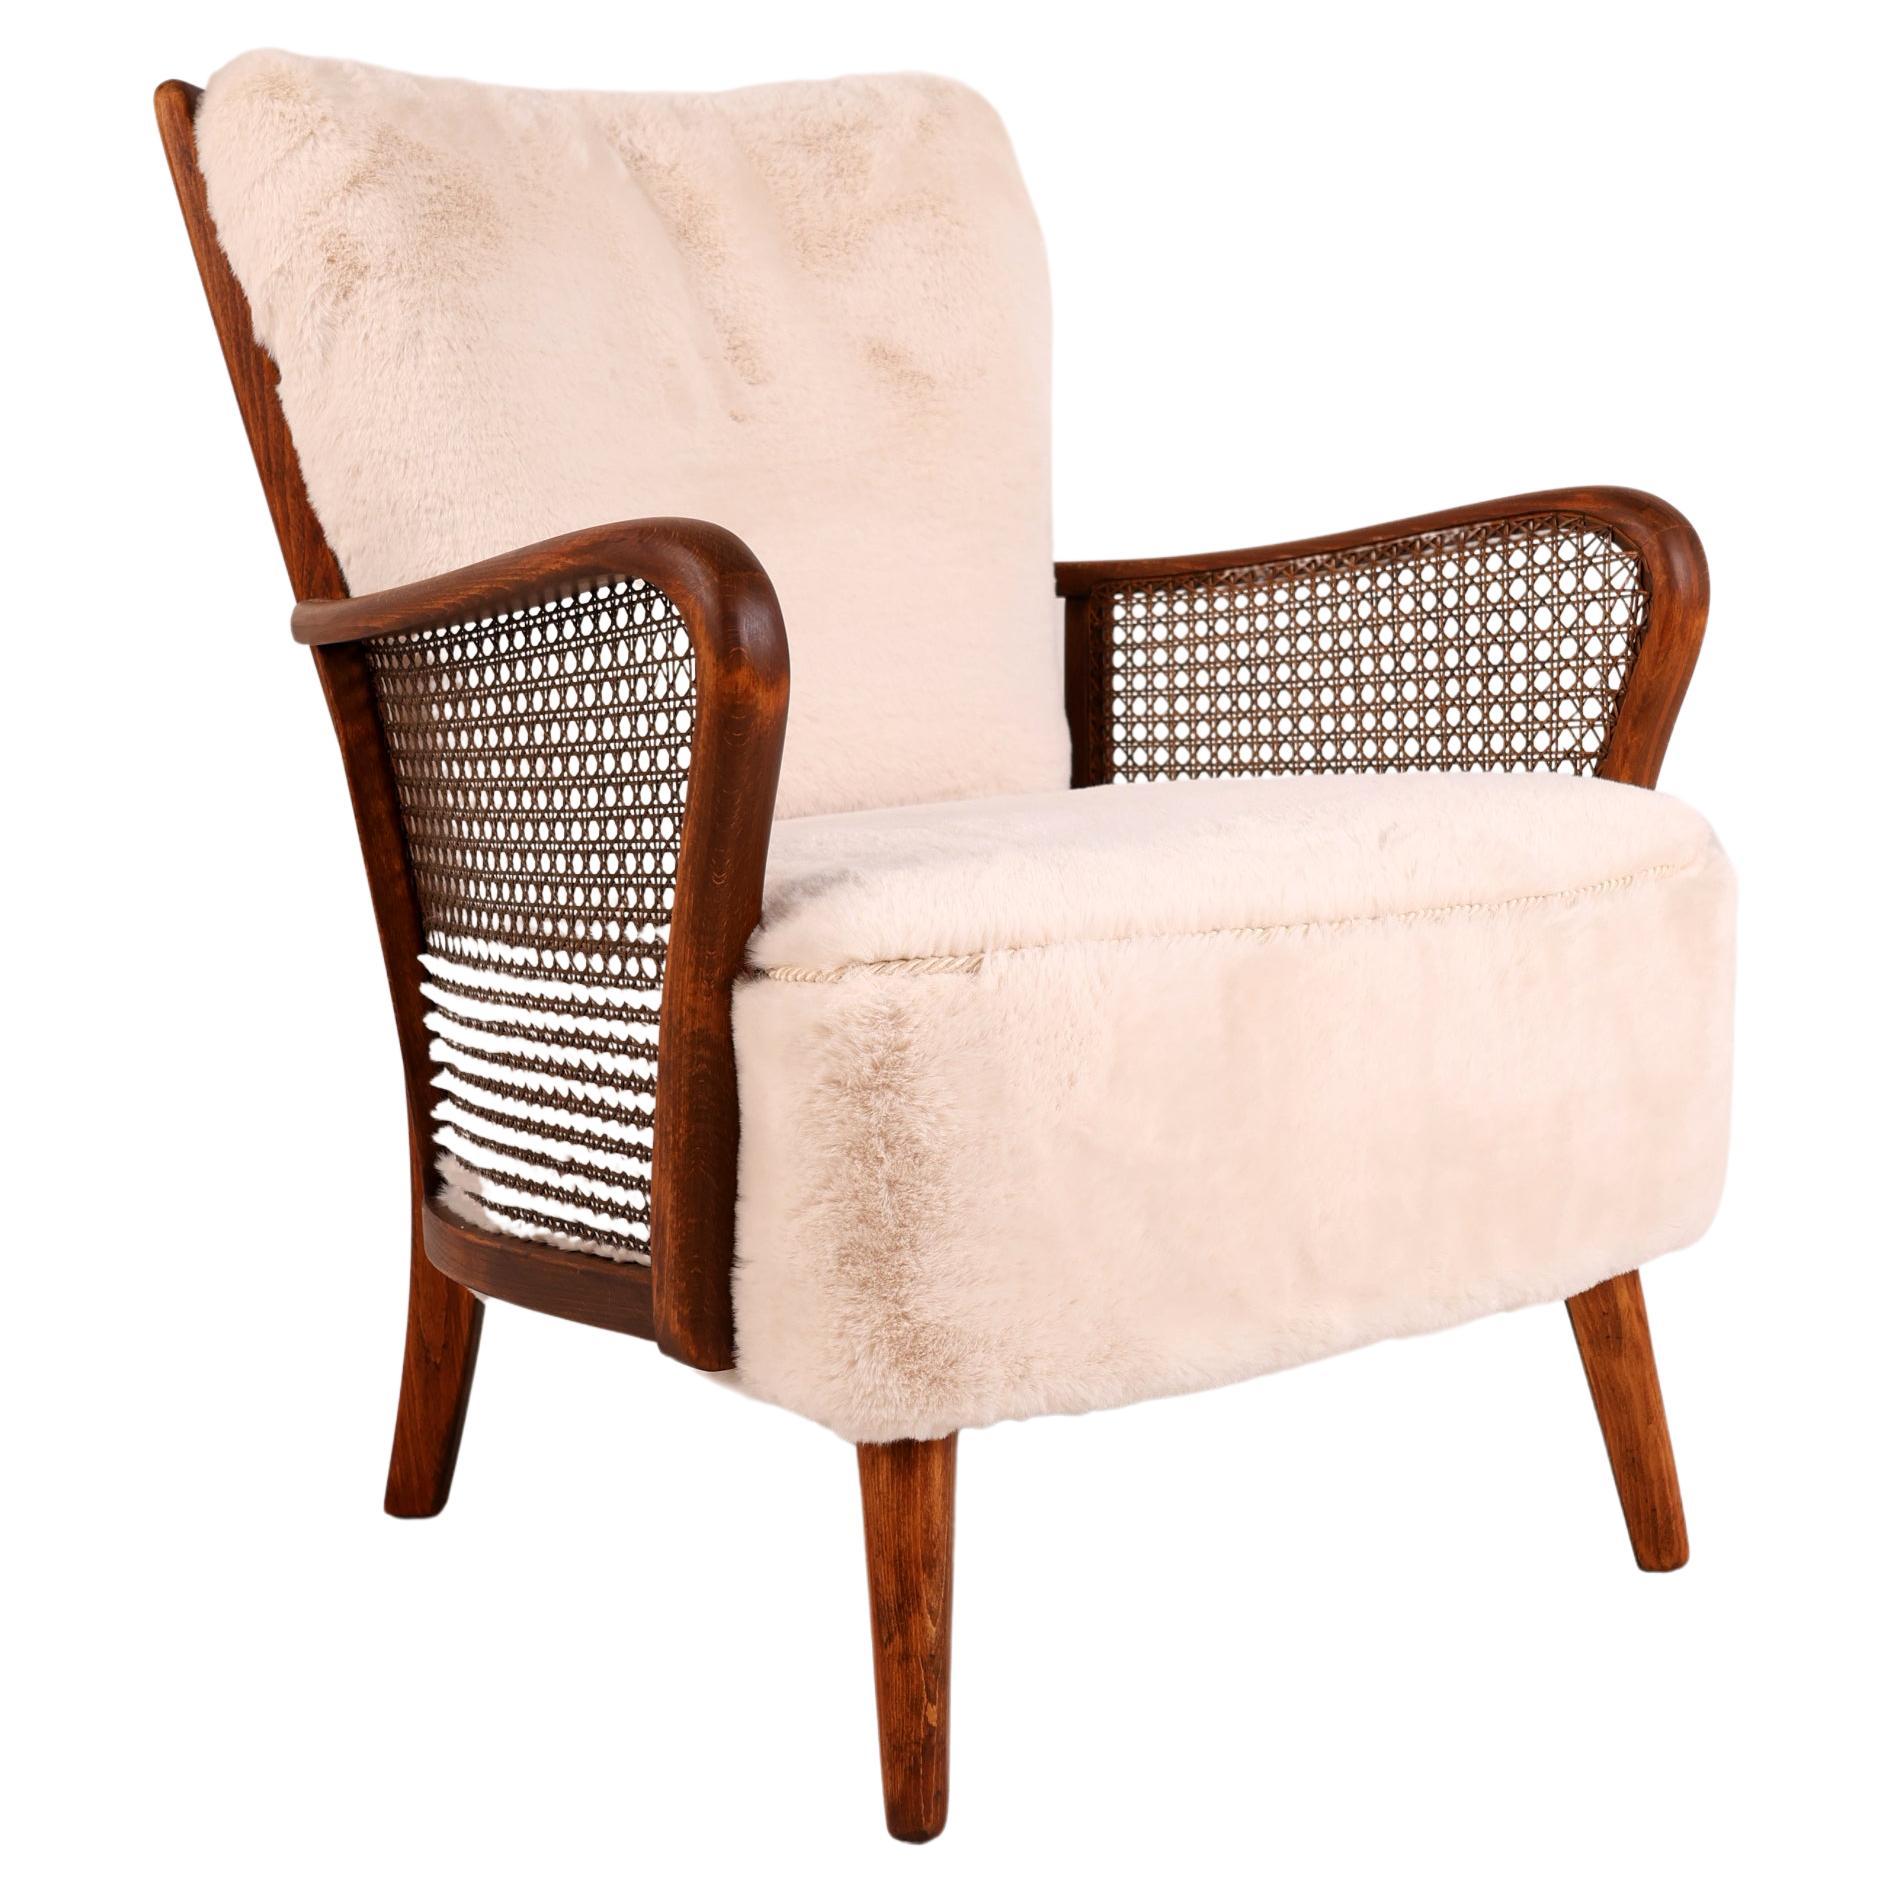 Chaise longue en rotin du milieu du 20e siècle

Voici une superbe chaise longue des années 1950, fabriquée de manière experte en Beeche et recouverte d'un rembourrage soigné. 

Cette chaise confortable s'harmonise avec de nombreux styles